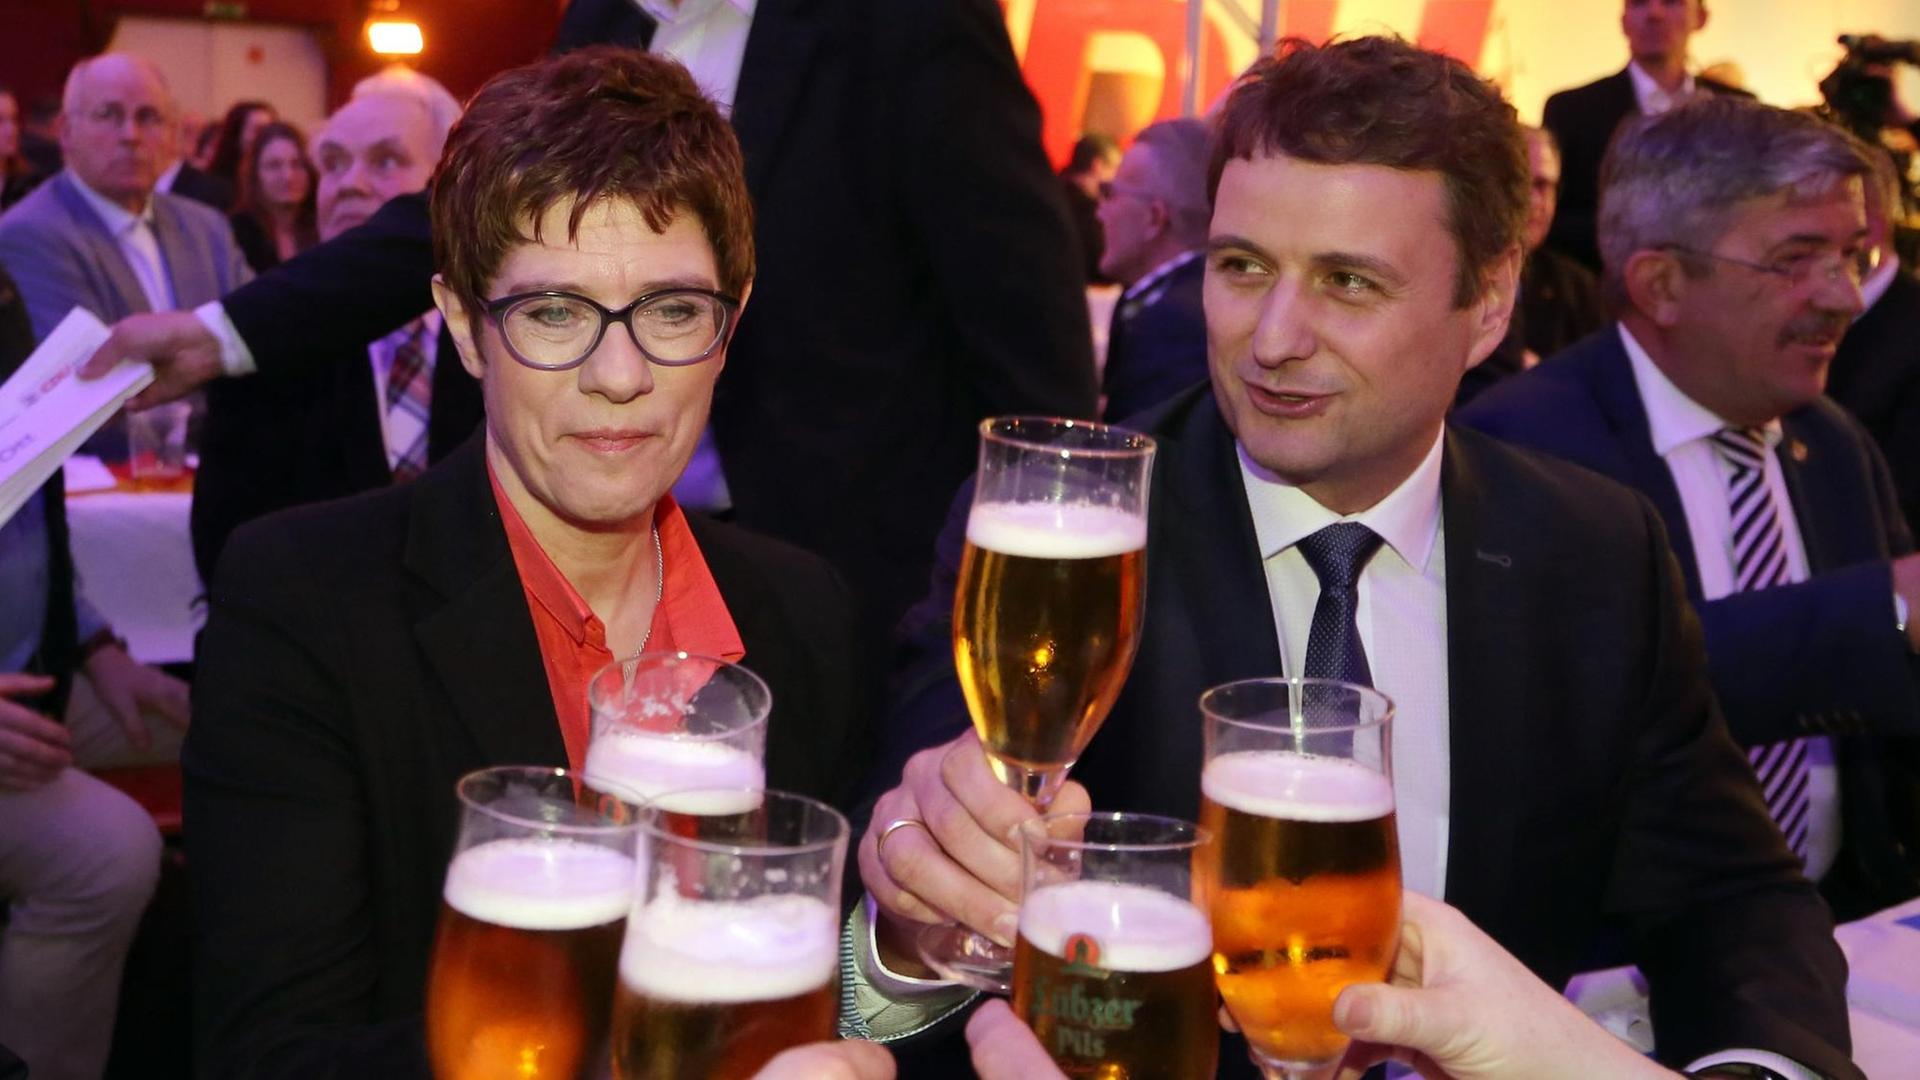 Annegret Kramp-Karrenbauer, CDU-Bundesvorsitzende, und Vincent Kokert, Landesvorsitzender der CDU Mecklenburg-Vorpommern, stoßen beim 24. Politischen Aschermittwoch der CDU Mecklenburg-Vorpommerns mit anderen Teilnehmern mit Bier an.